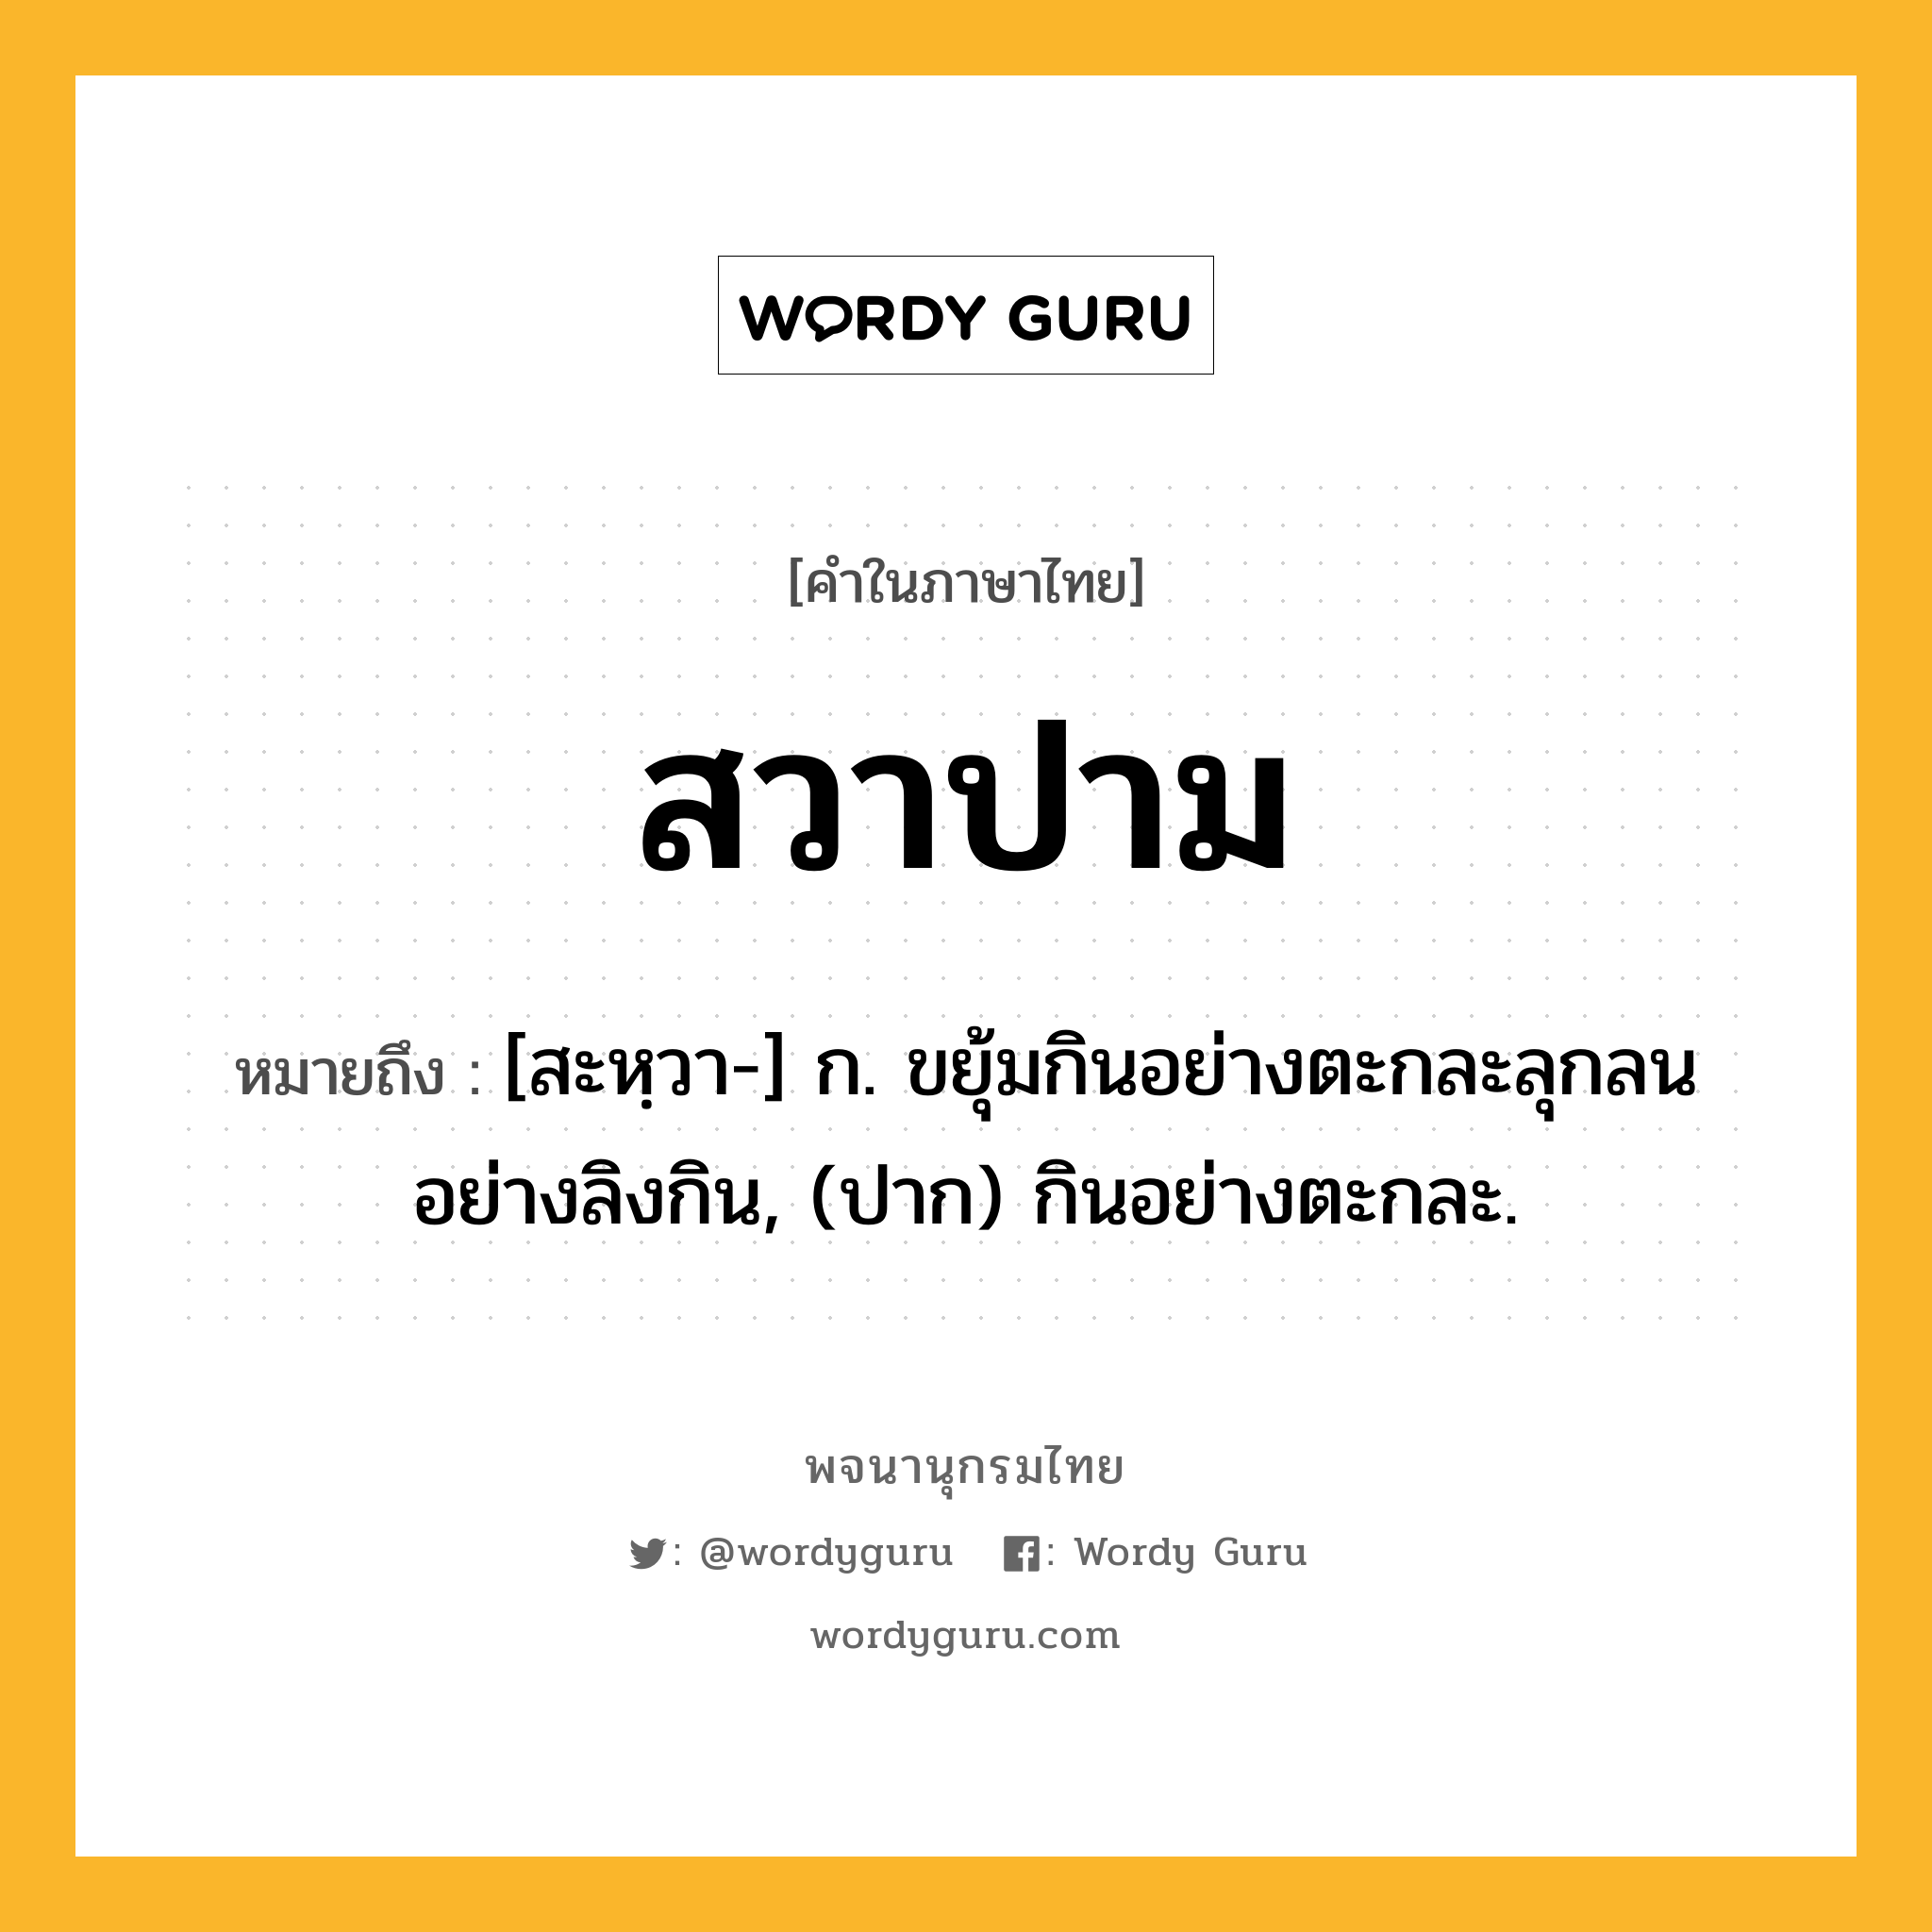 สวาปาม ความหมาย หมายถึงอะไร?, คำในภาษาไทย สวาปาม หมายถึง [สะหฺวา-] ก. ขยุ้มกินอย่างตะกละลุกลนอย่างลิงกิน, (ปาก) กินอย่างตะกละ.